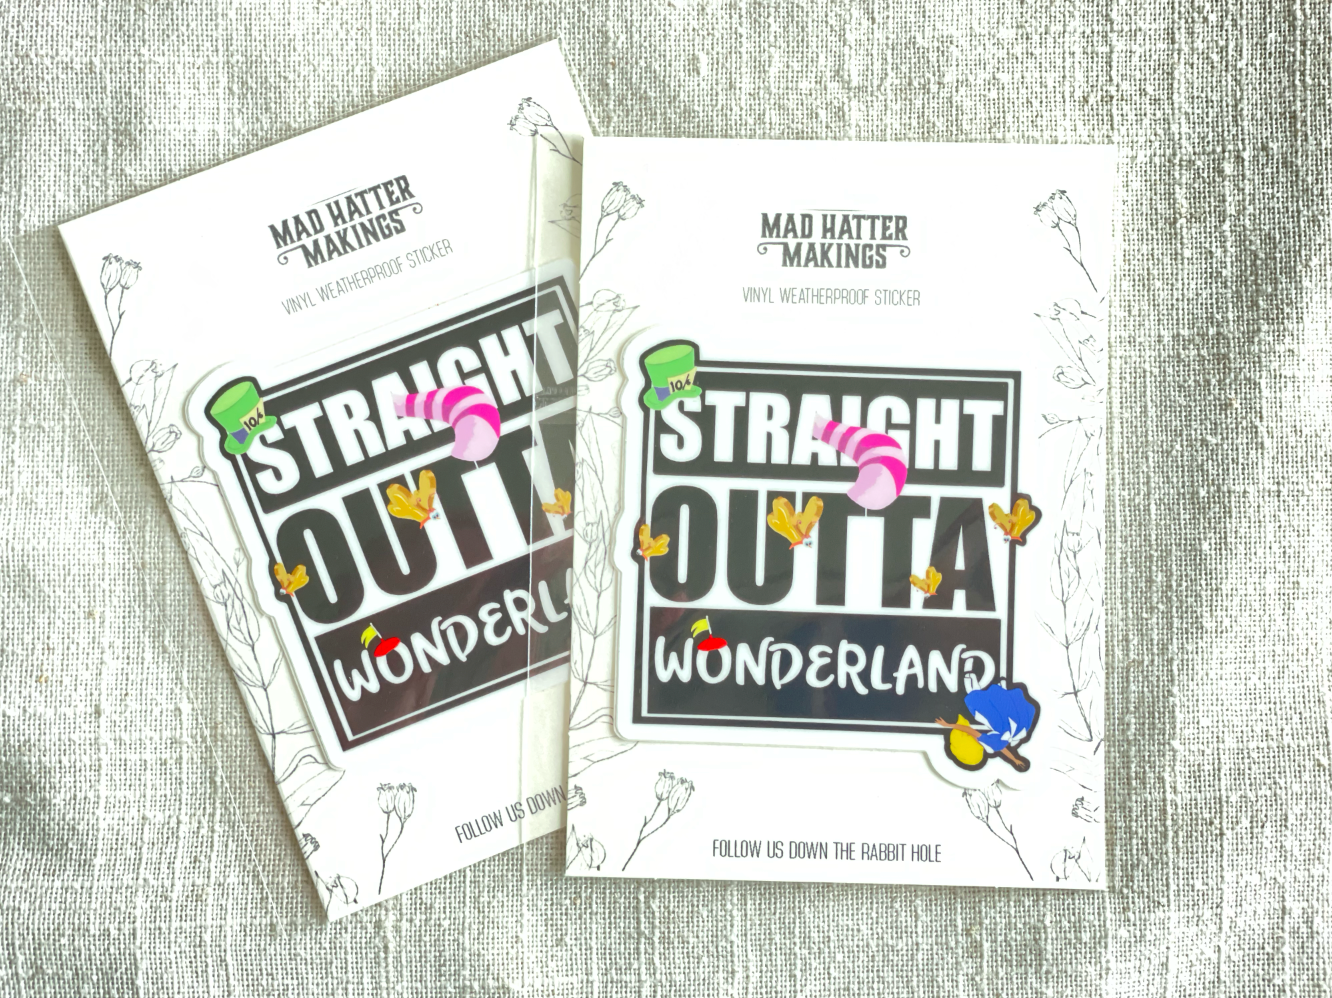 Straight OUTTA Wonderland Vinyl Sticker